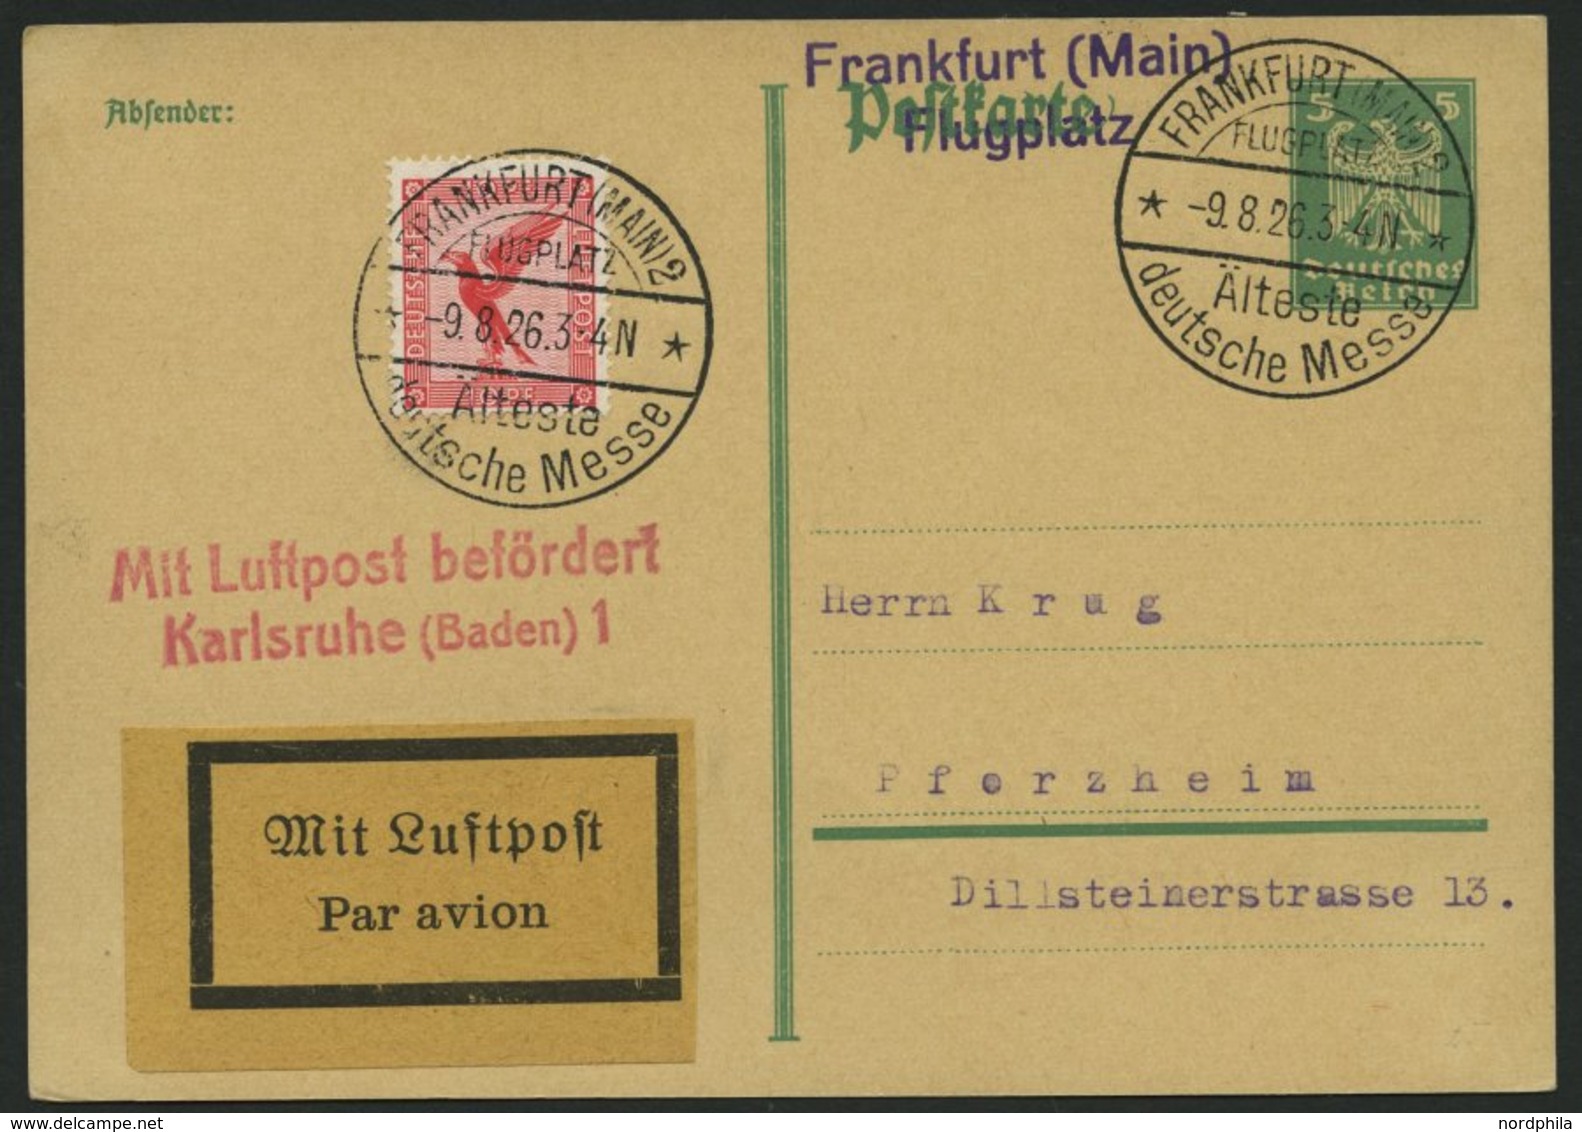 LUFTPOSTBESTÄTIGUNGSSTPL 59-02a BRIEF, KARLSRUHE 1, L2 In Rot, Postkarte Von FRANKFURT (MAIN) 2 Nach Pforzheim, Pracht - Correo Aéreo & Zeppelin